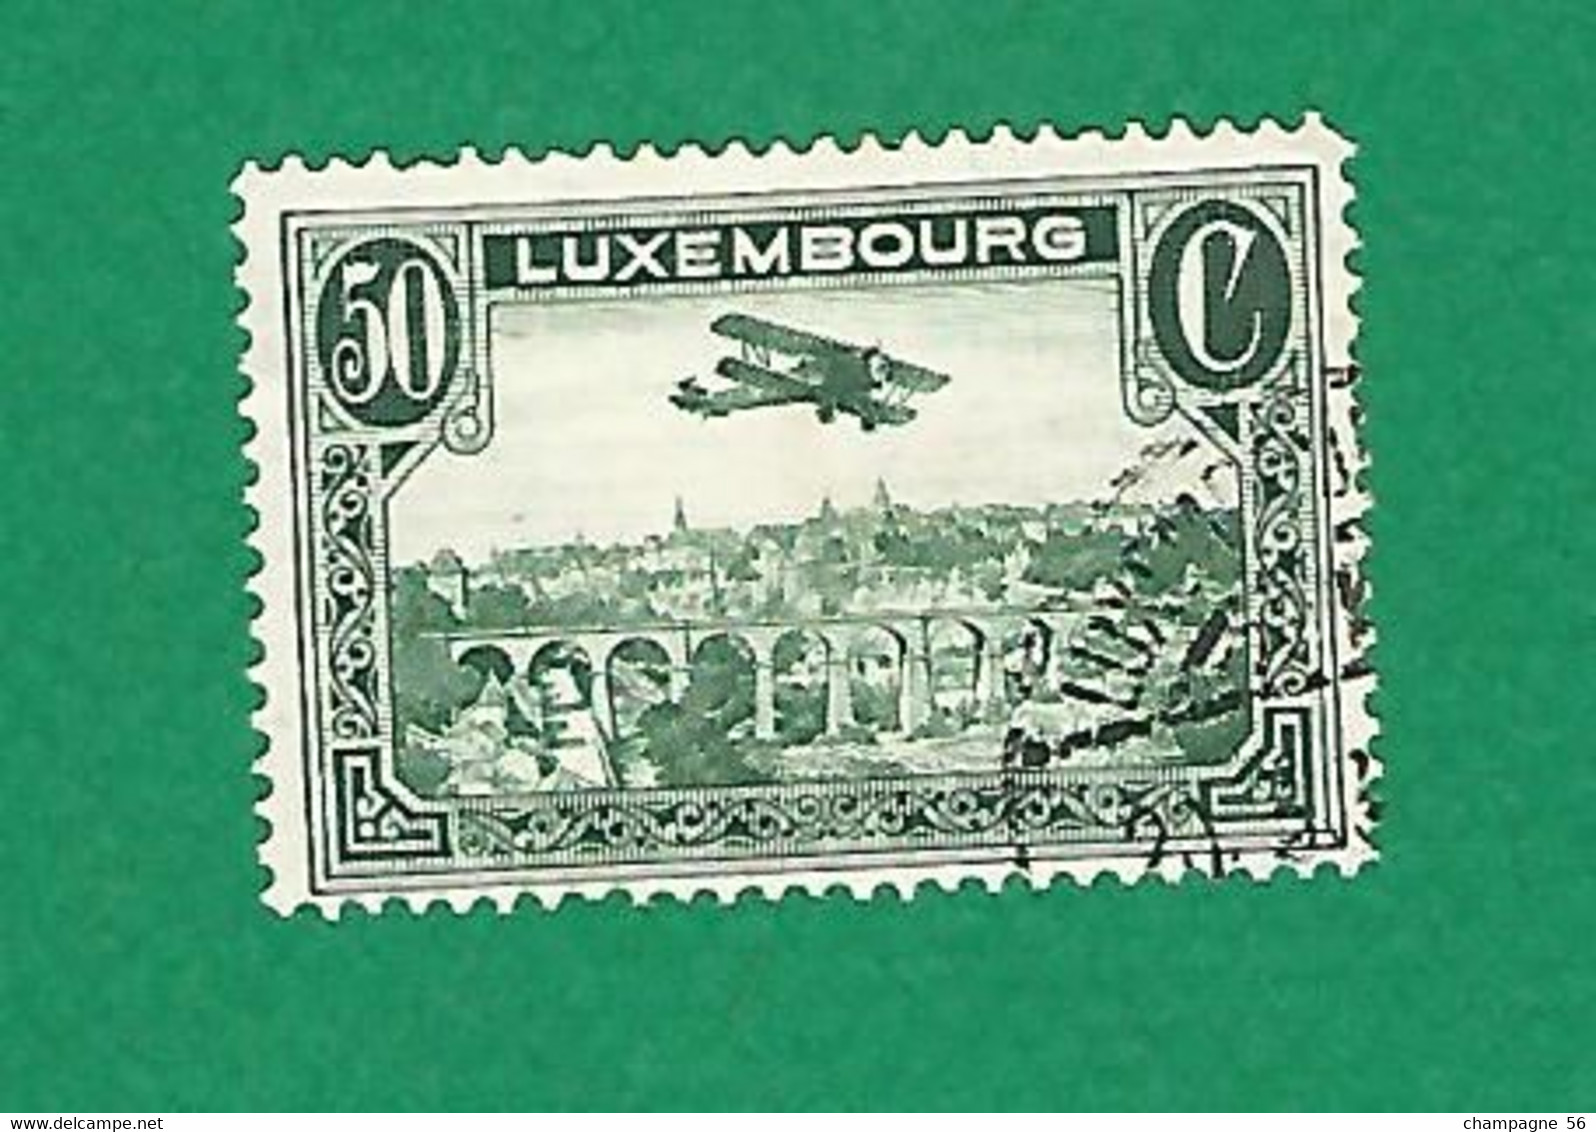 LUXEMBOURG POSTE AÉRIENNE 1931 / 1933 N° 1 VUE DE LA VILLE LUXEMBOURG 50 C VERT OBLITÉRÉ  CHARNIÈRE  LUXEMBOURG - Used Stamps